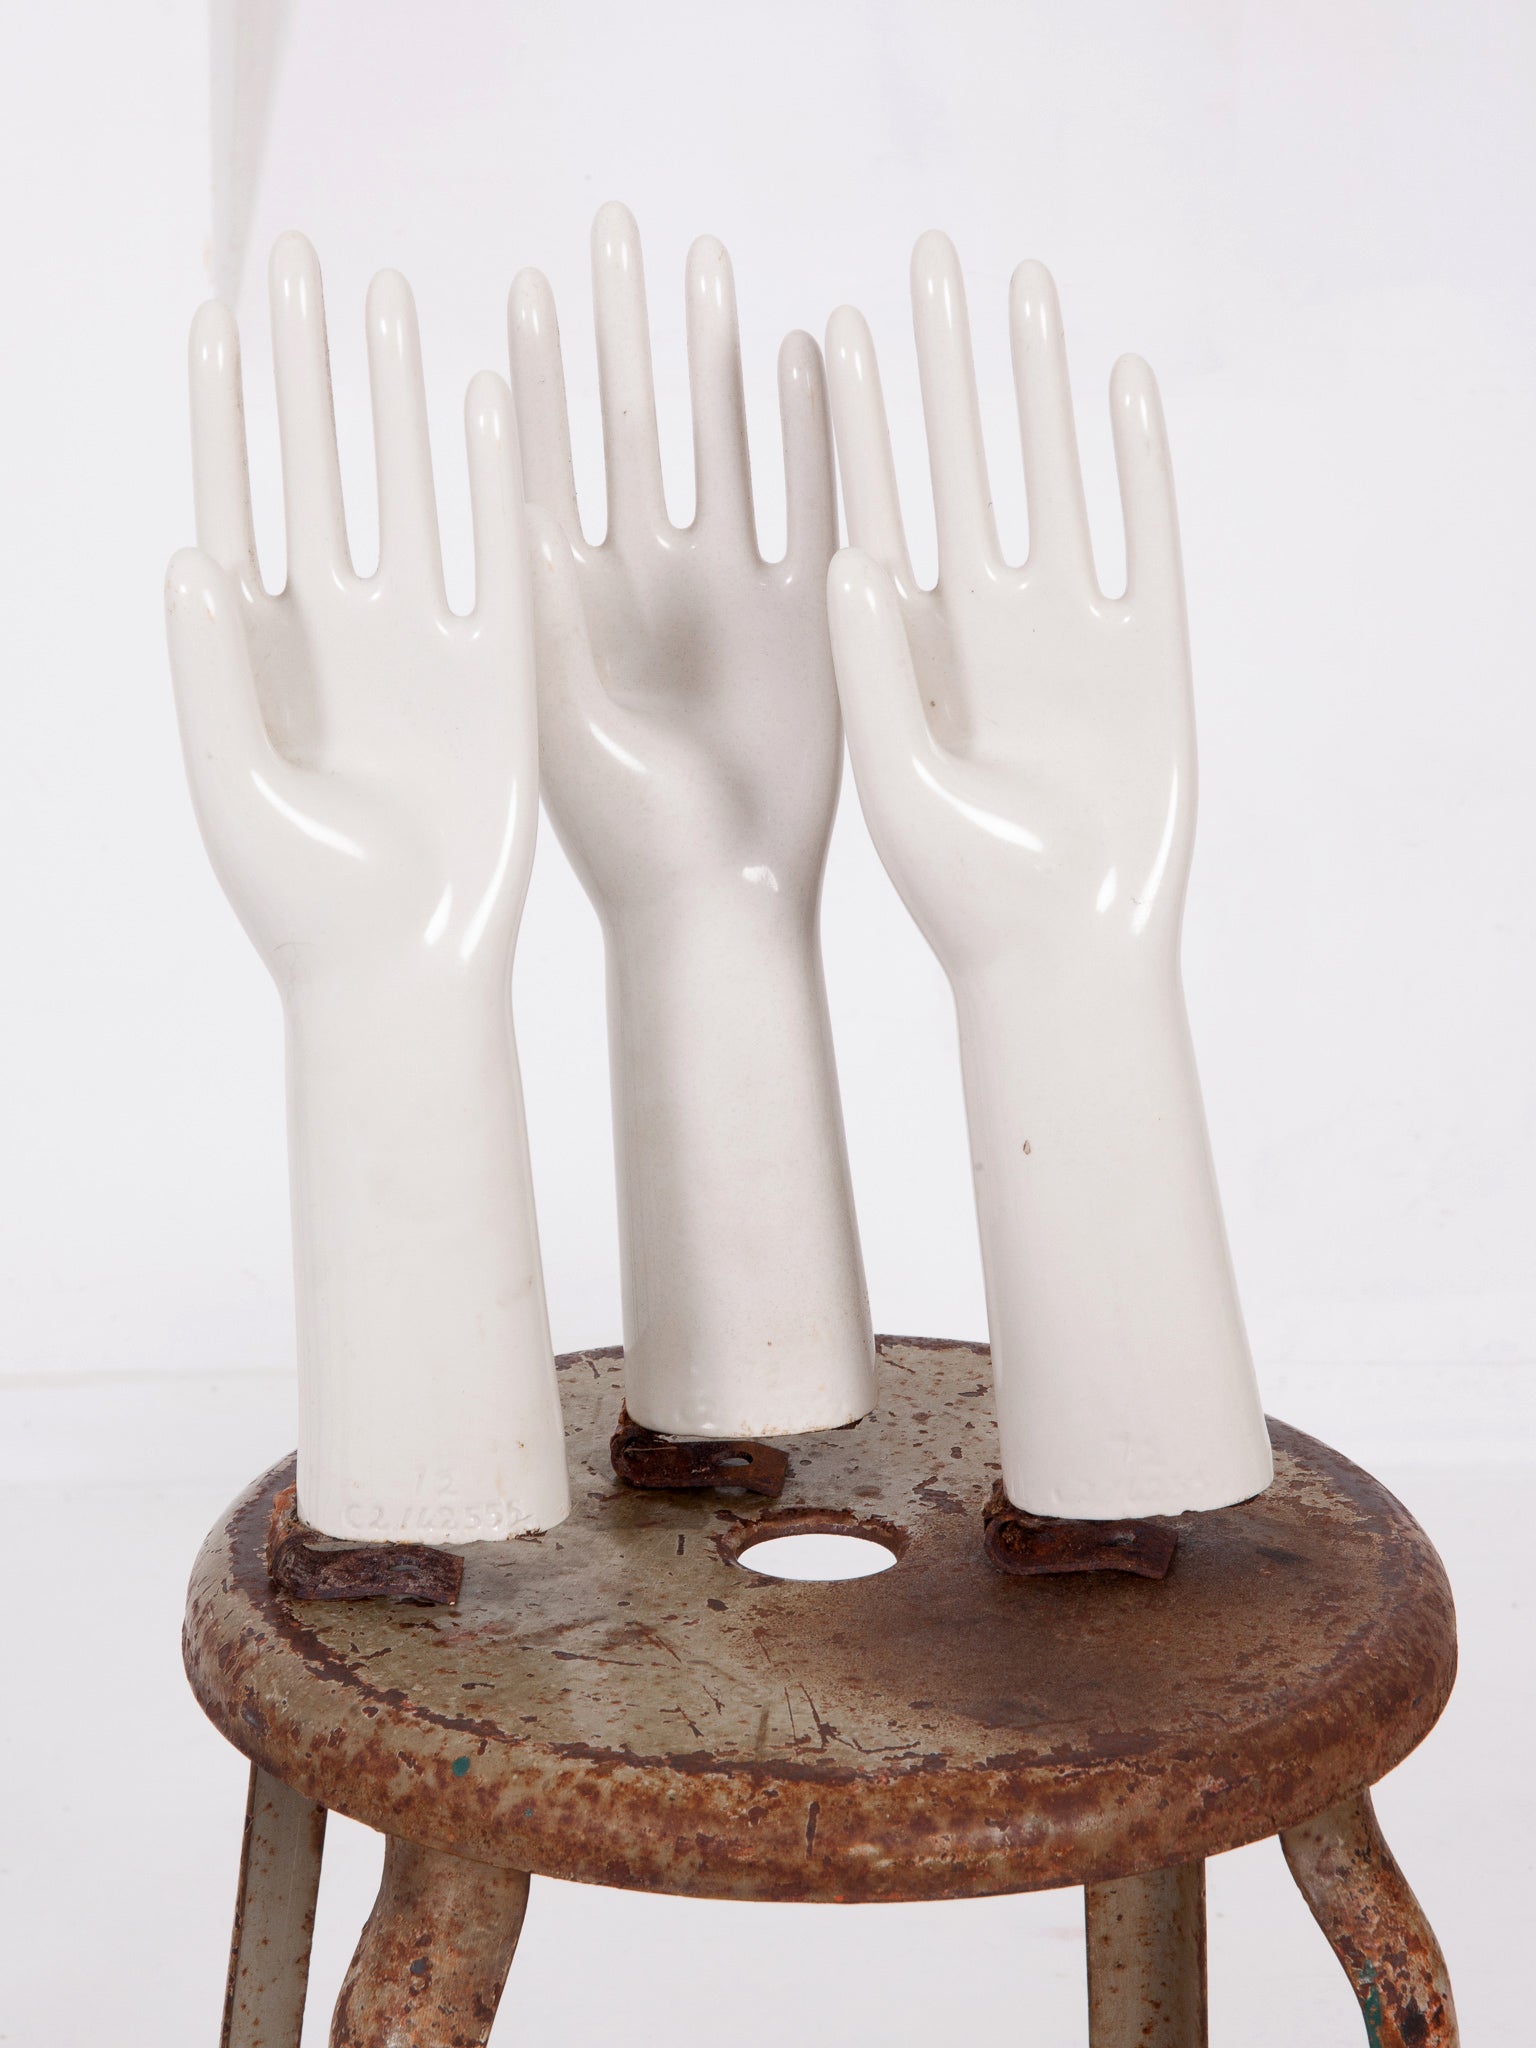 Glove Moulds – Drew Pritchard Ltd